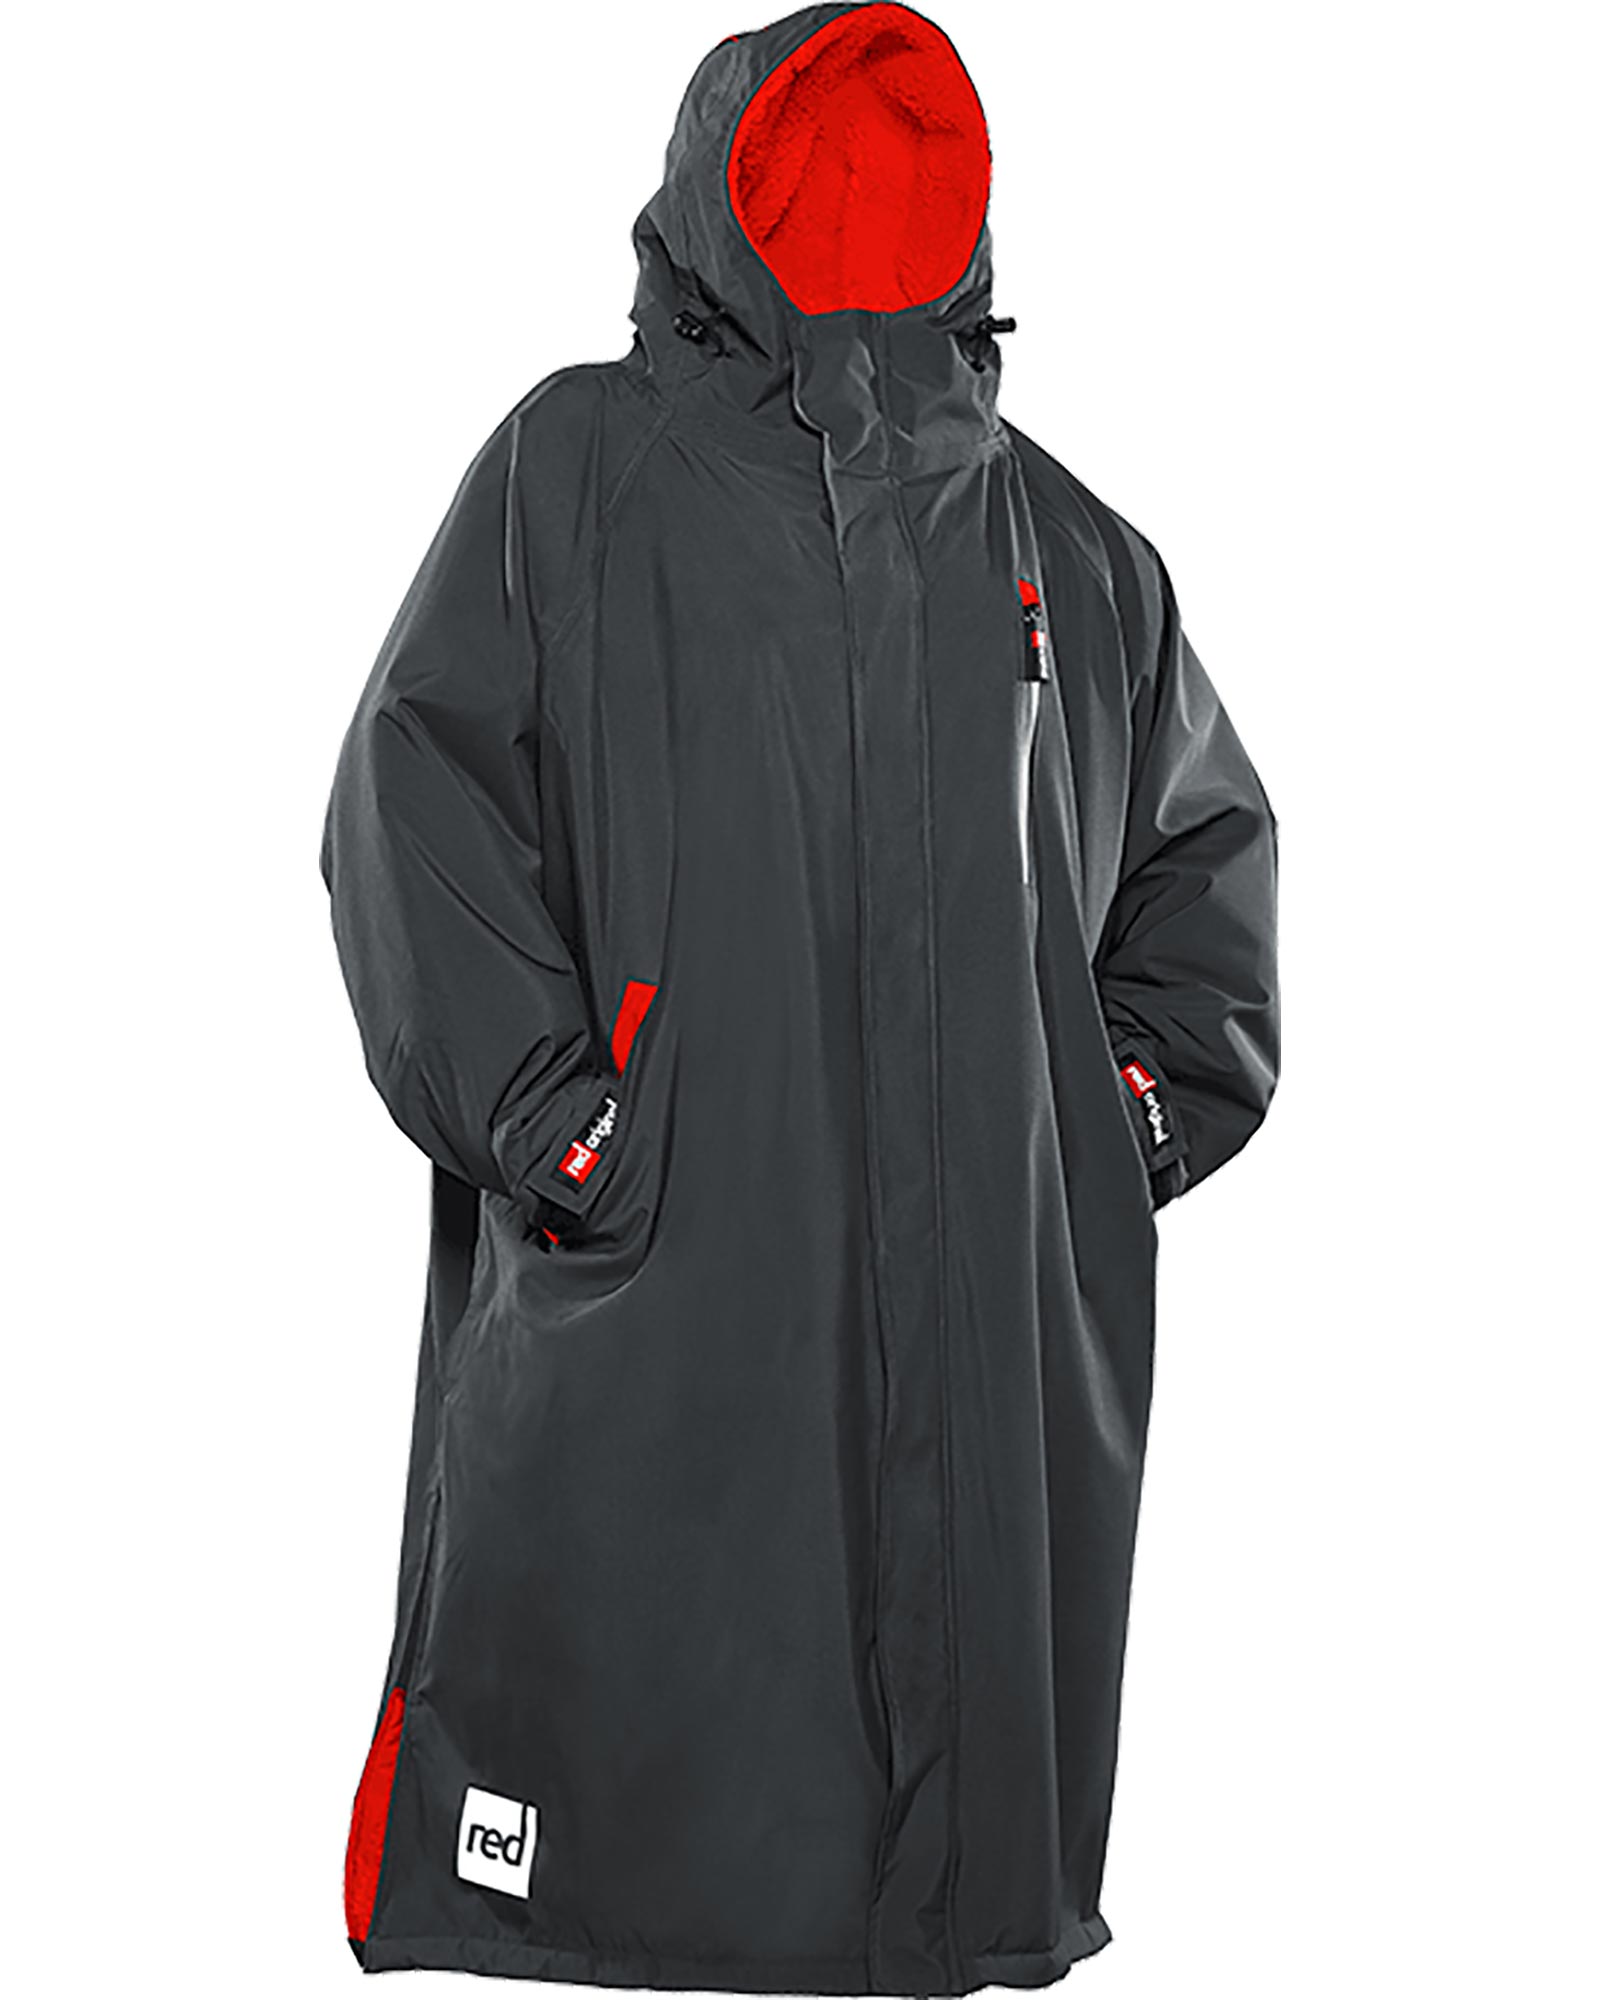 Red Paddle Co Pro Change Jacket 2.0 Long Sleeve